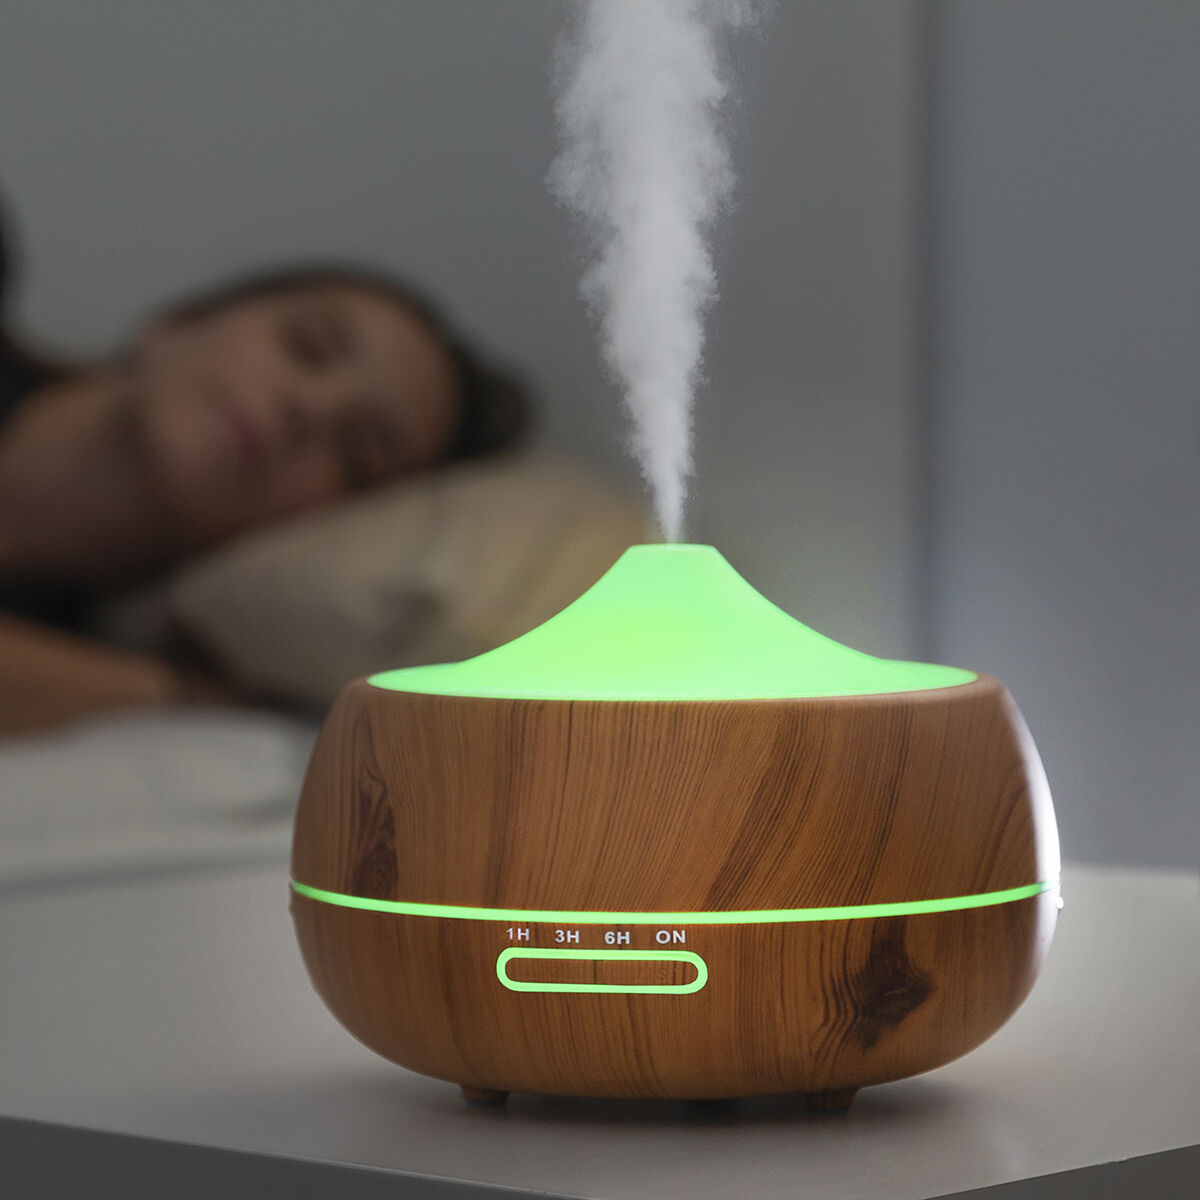 InnovaGoods Wooden-Effect Luchtbevochtiger met Aromatherapie